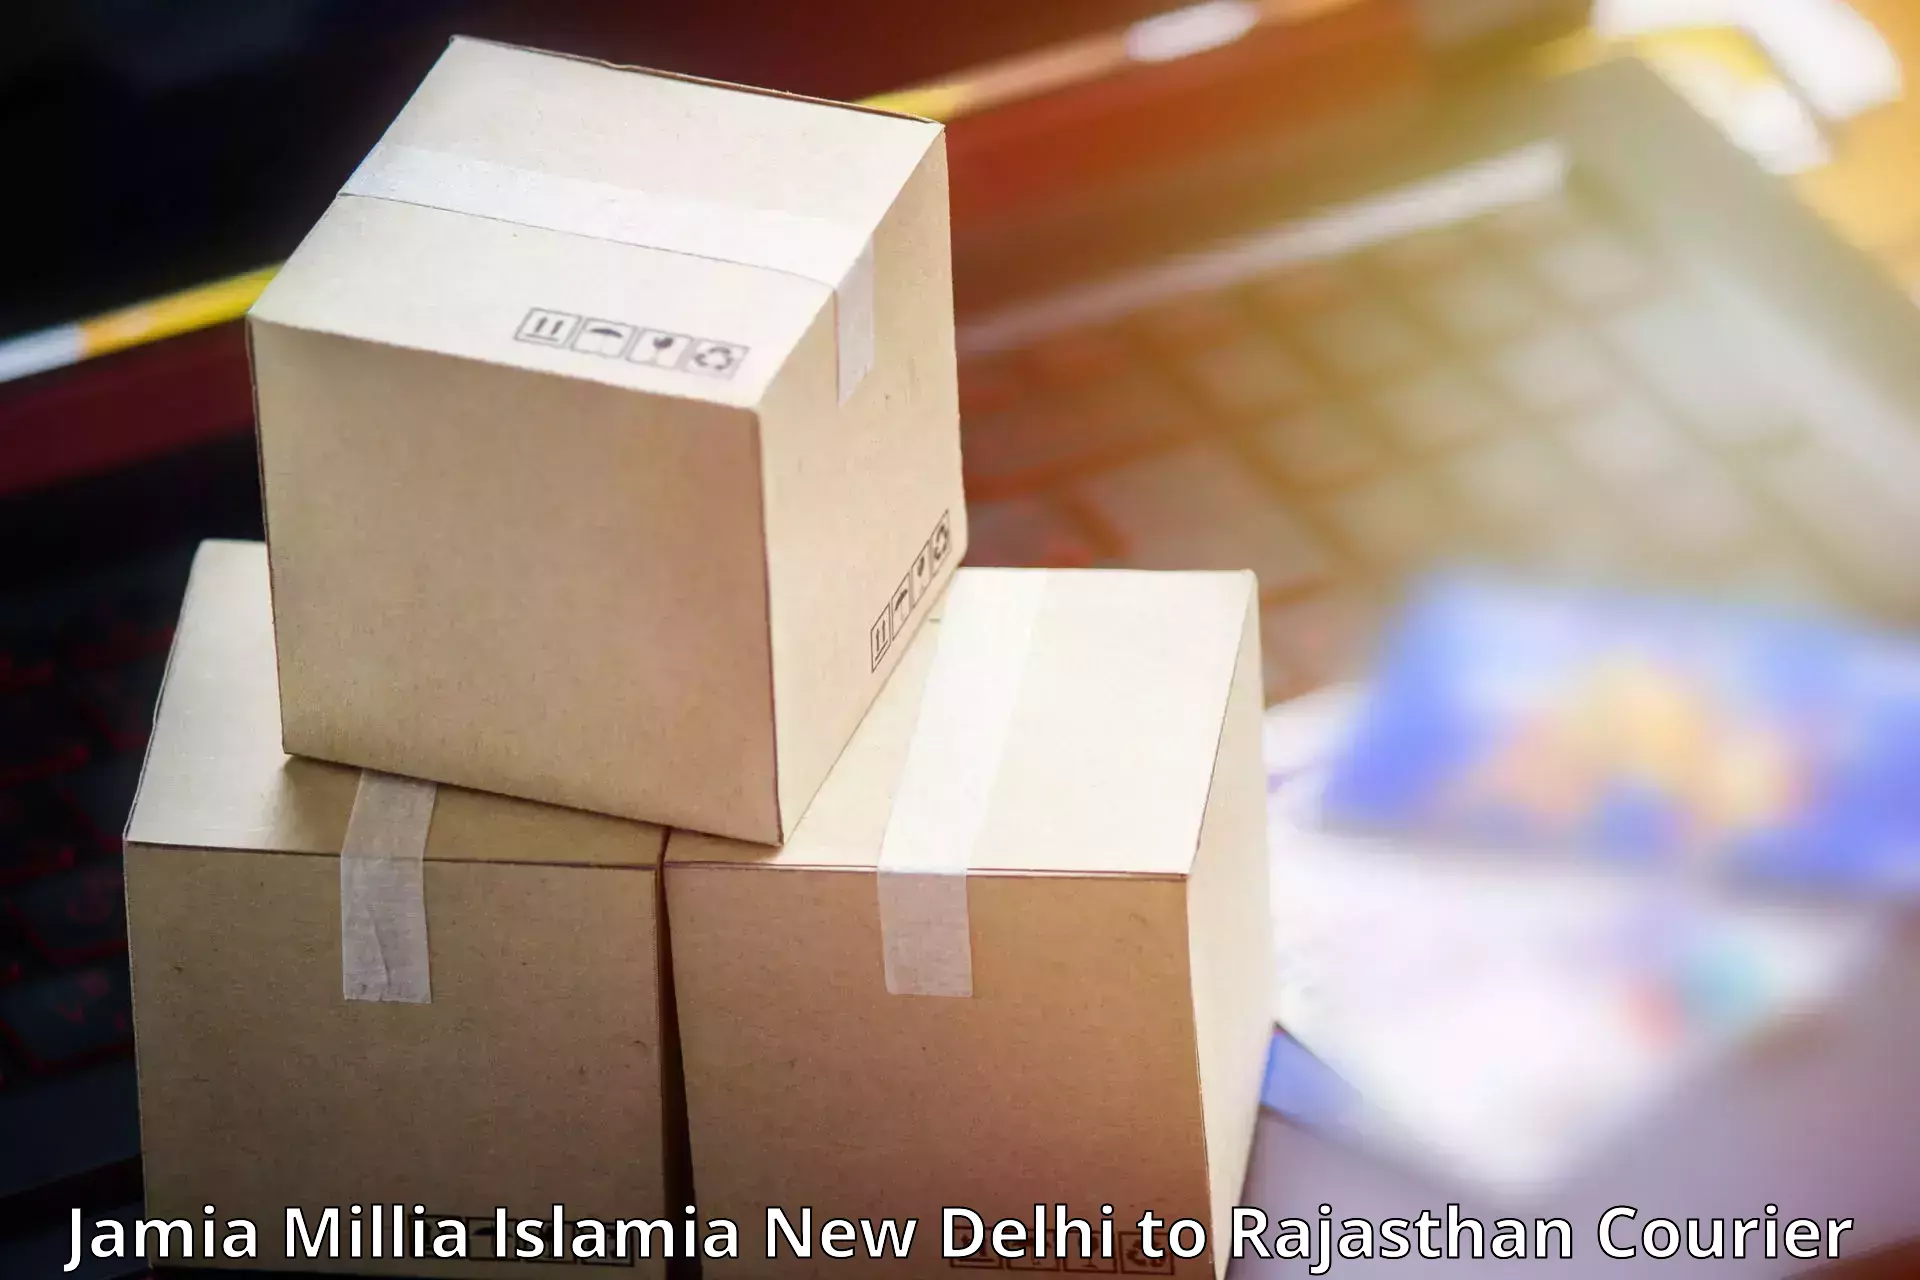 Professional courier services Jamia Millia Islamia New Delhi to Mathania